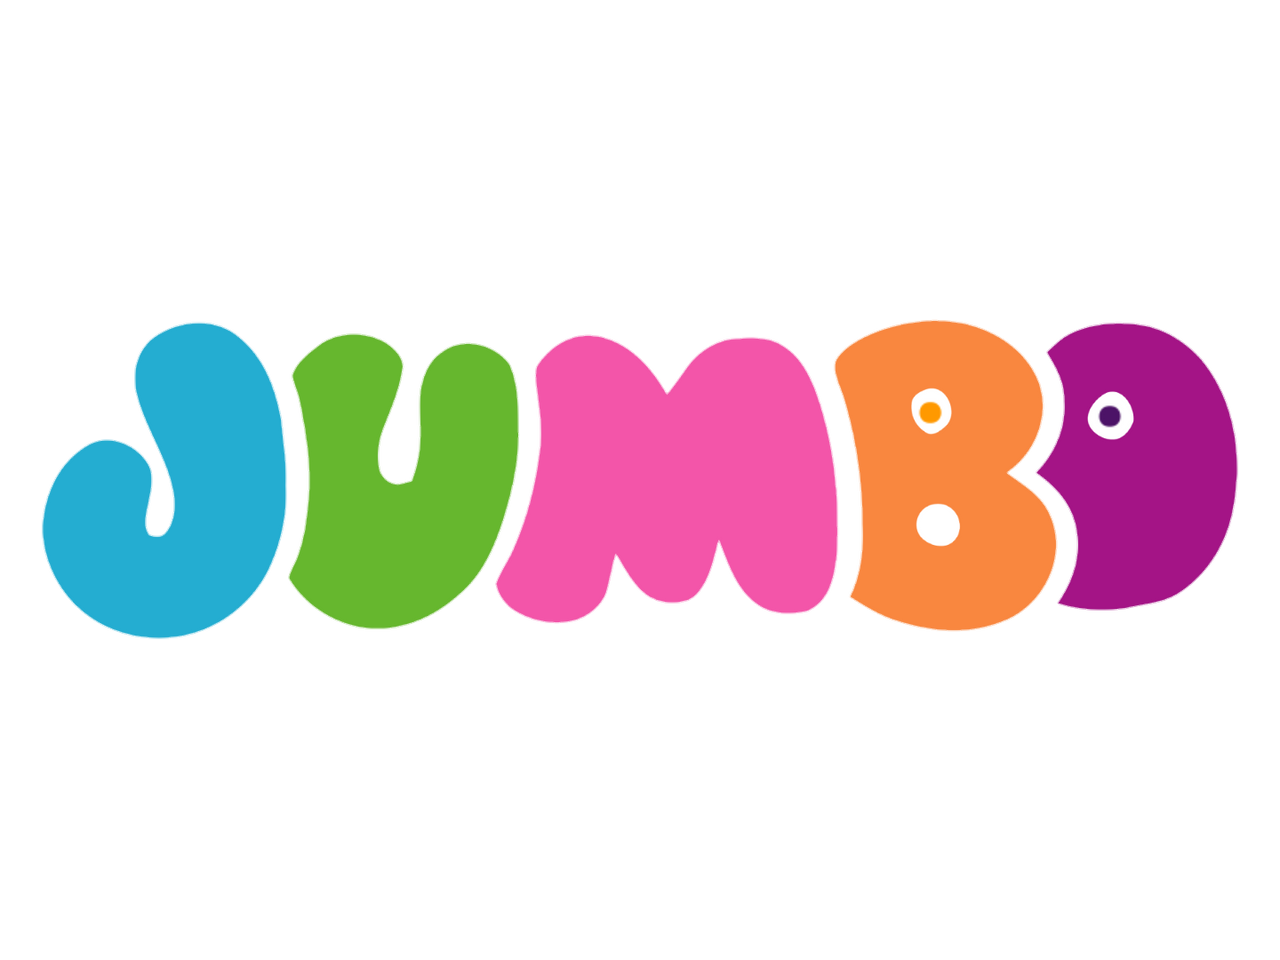 Jumbo Logo (TVOKids Style) by BobbyInteraction5 on DeviantArt